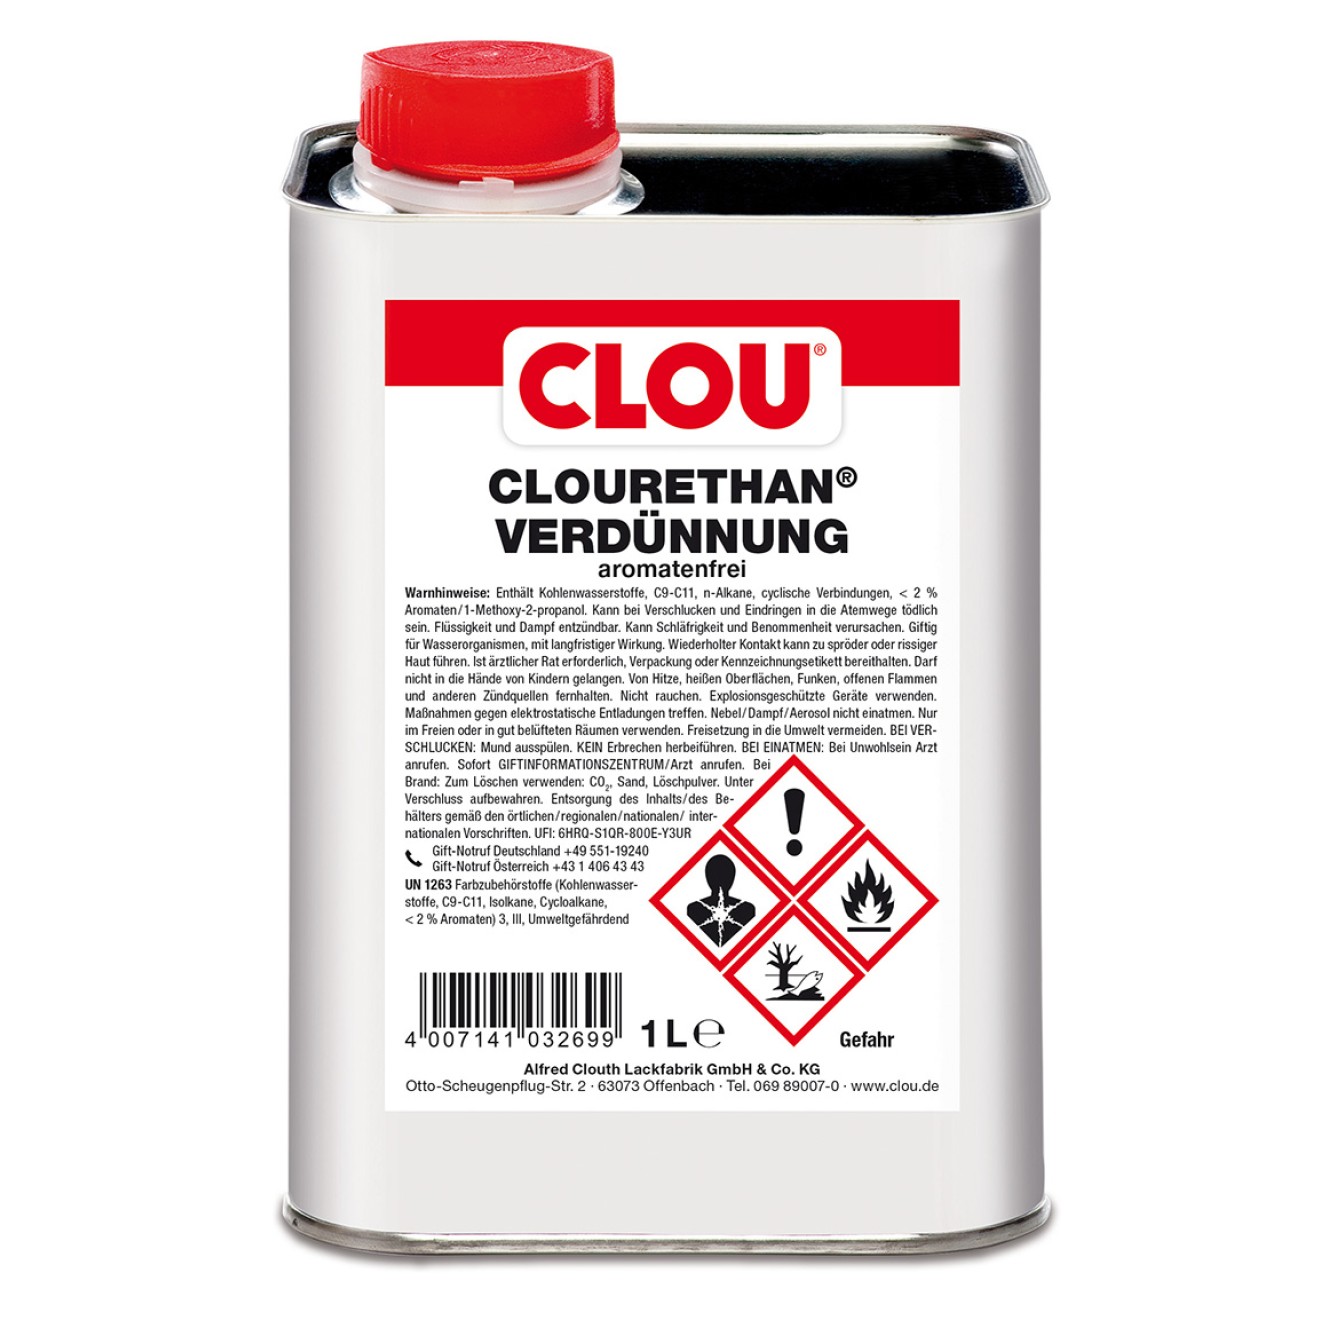 CLOURETHAN-Verdünnung aromatenfrei 5Ltr.